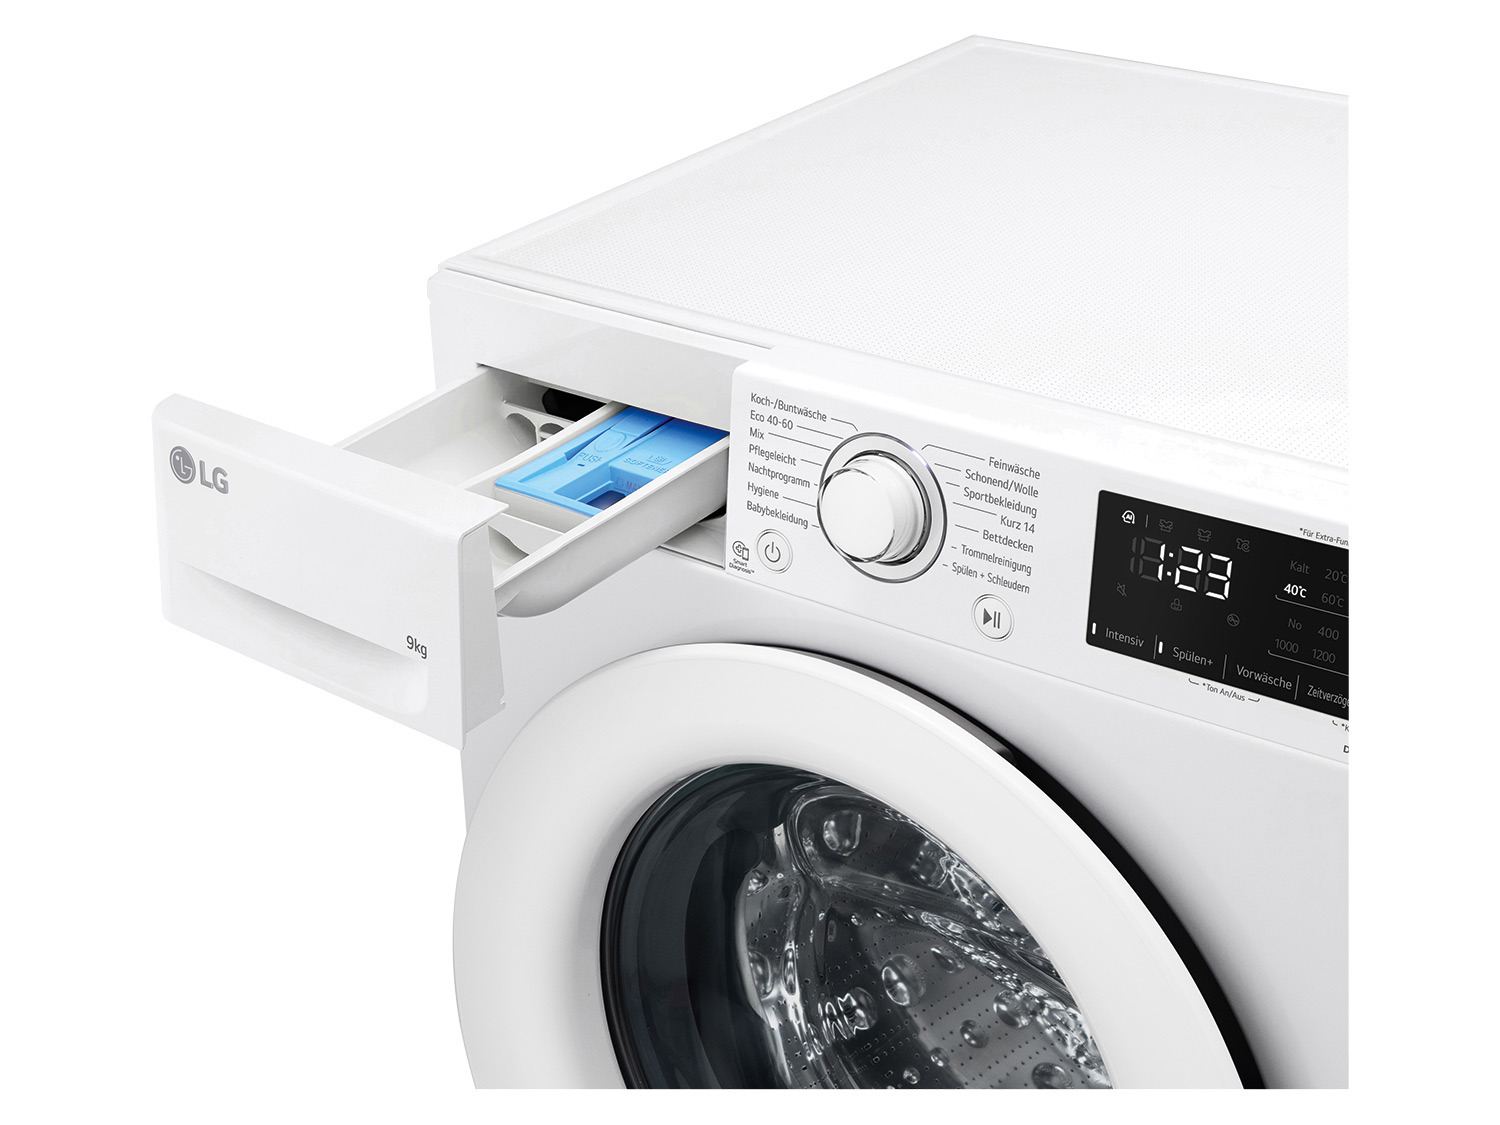 kaufen online LG »F4NV3193«, Waschmaschine LIDL | 9kg